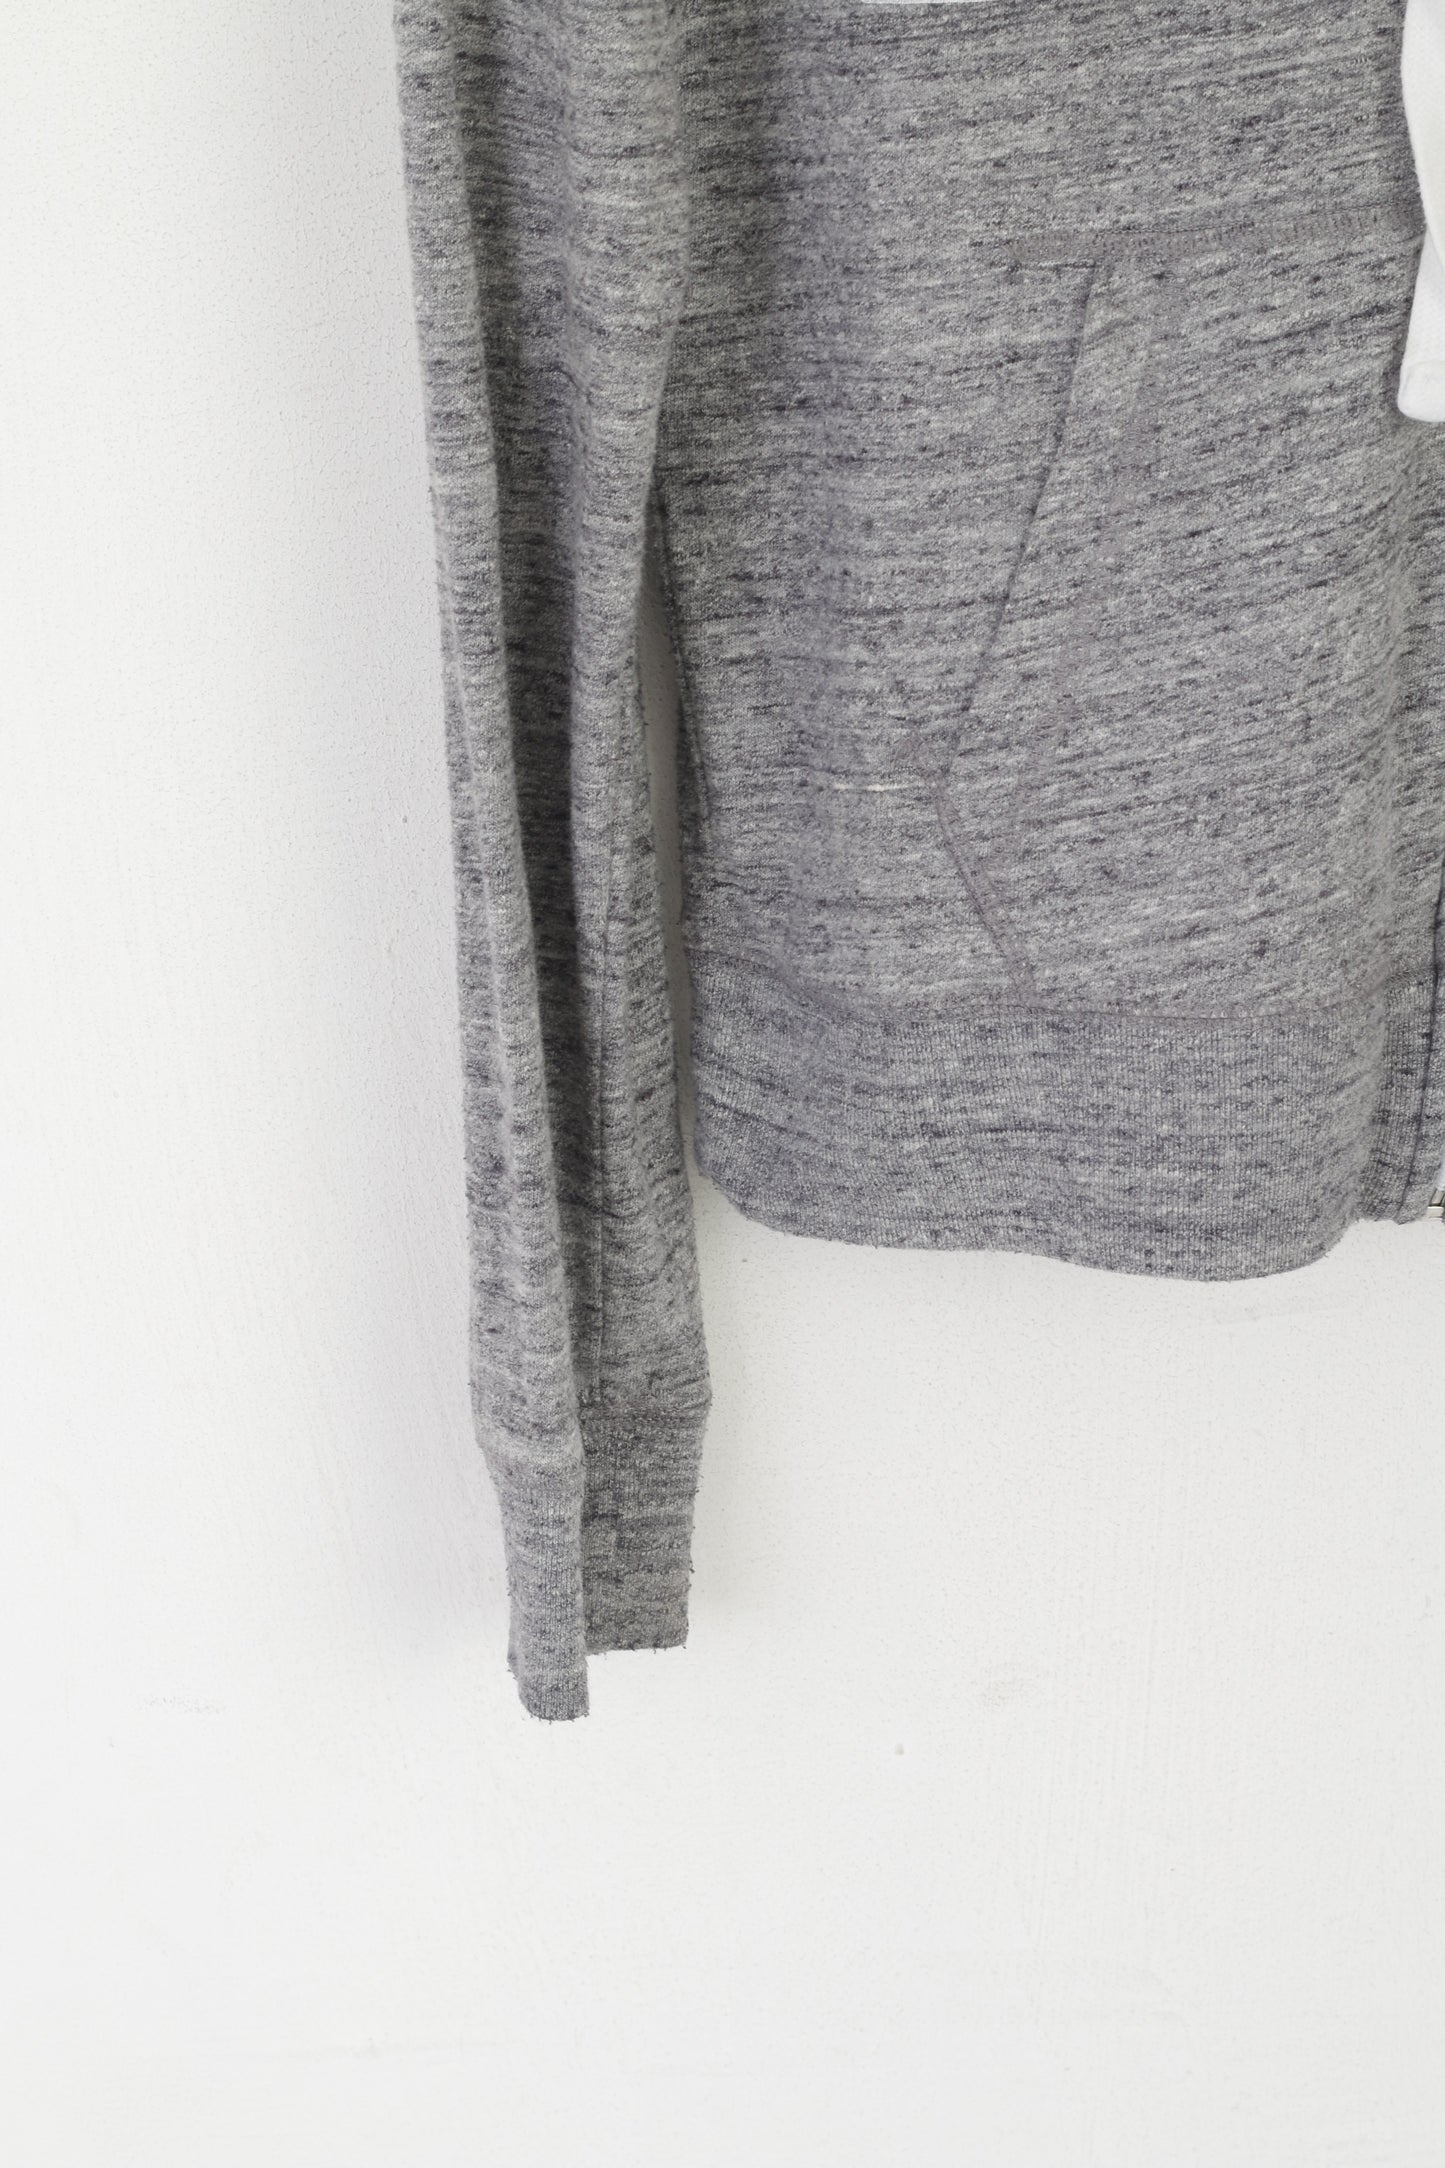 PINK Women S Sweatshirt Gray Cotton Full Zip Hooded Victoria's Secret Top